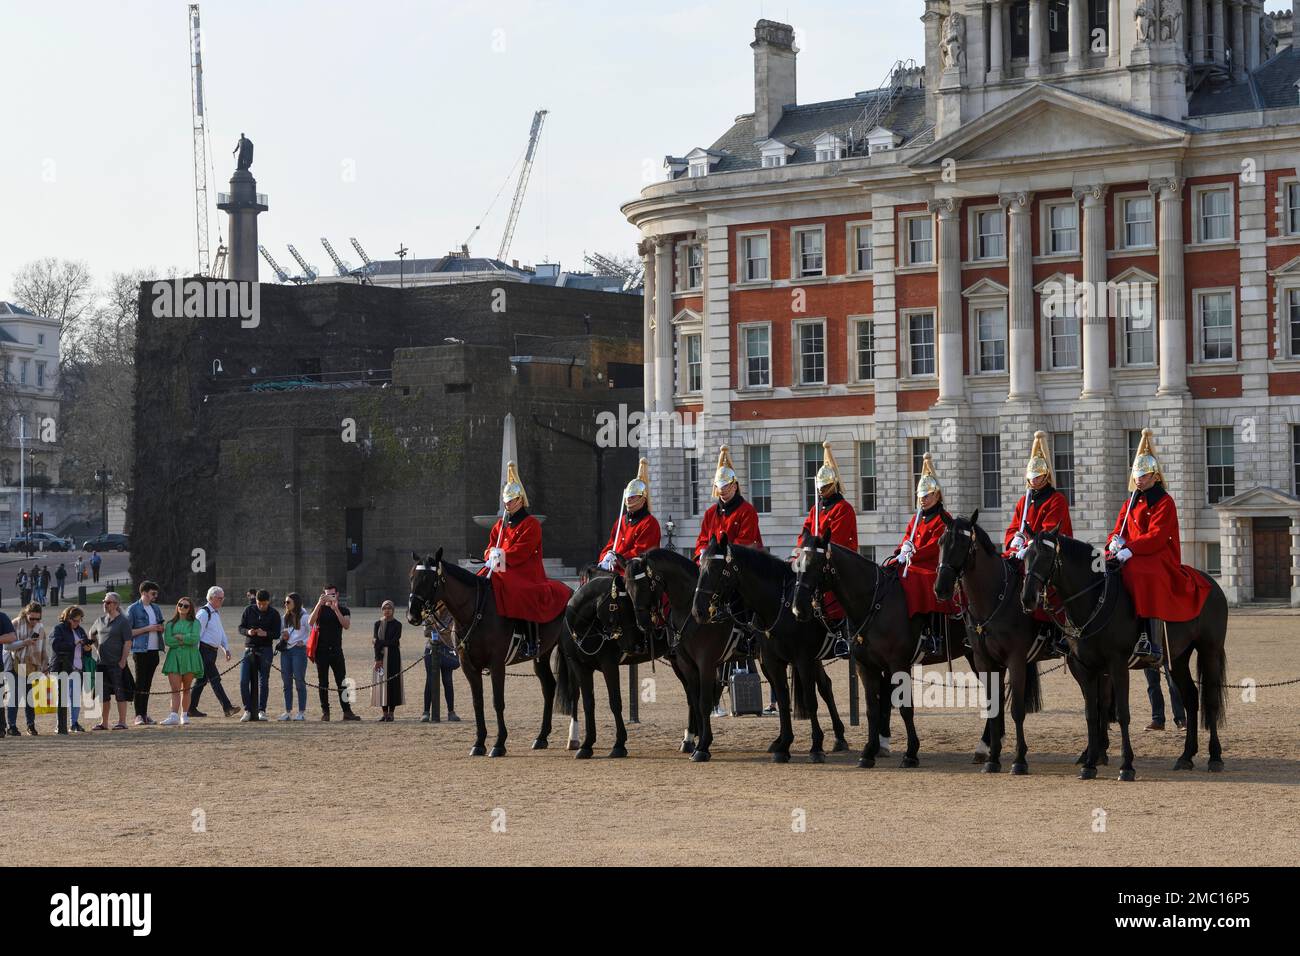 Parade des gardes à cheval, soldats du régiment à cheval de la cavalerie de la maison, White Hall, Westminster, Londres, Angleterre, Grande-Bretagne Banque D'Images